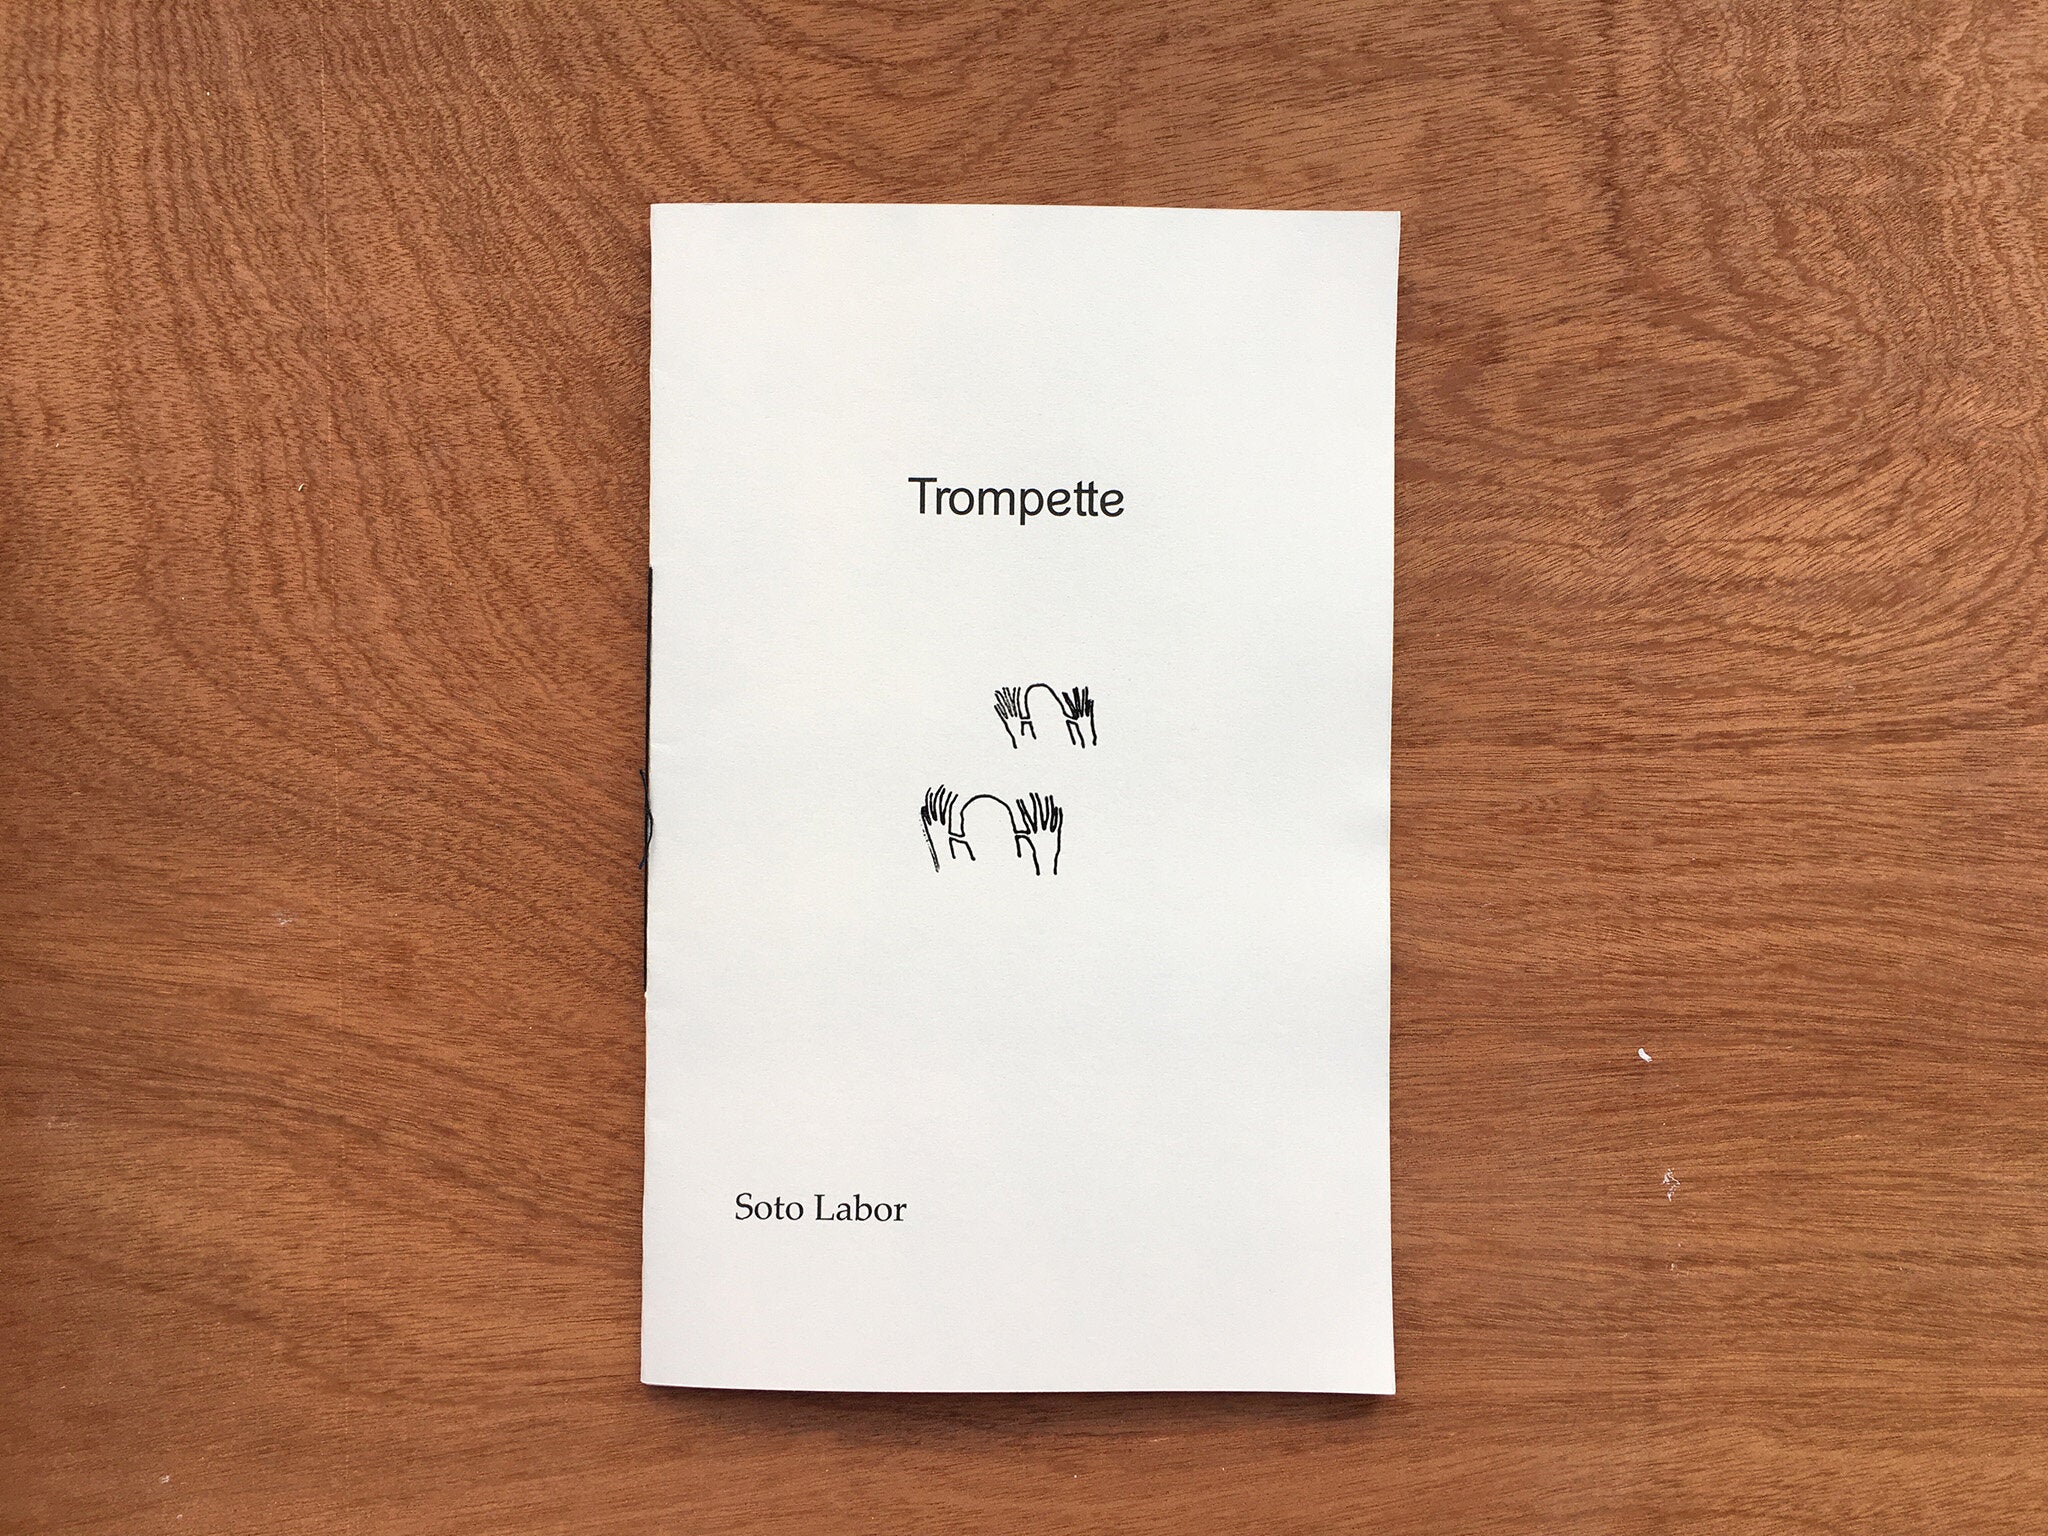 TROMPETTE by Soto Labor